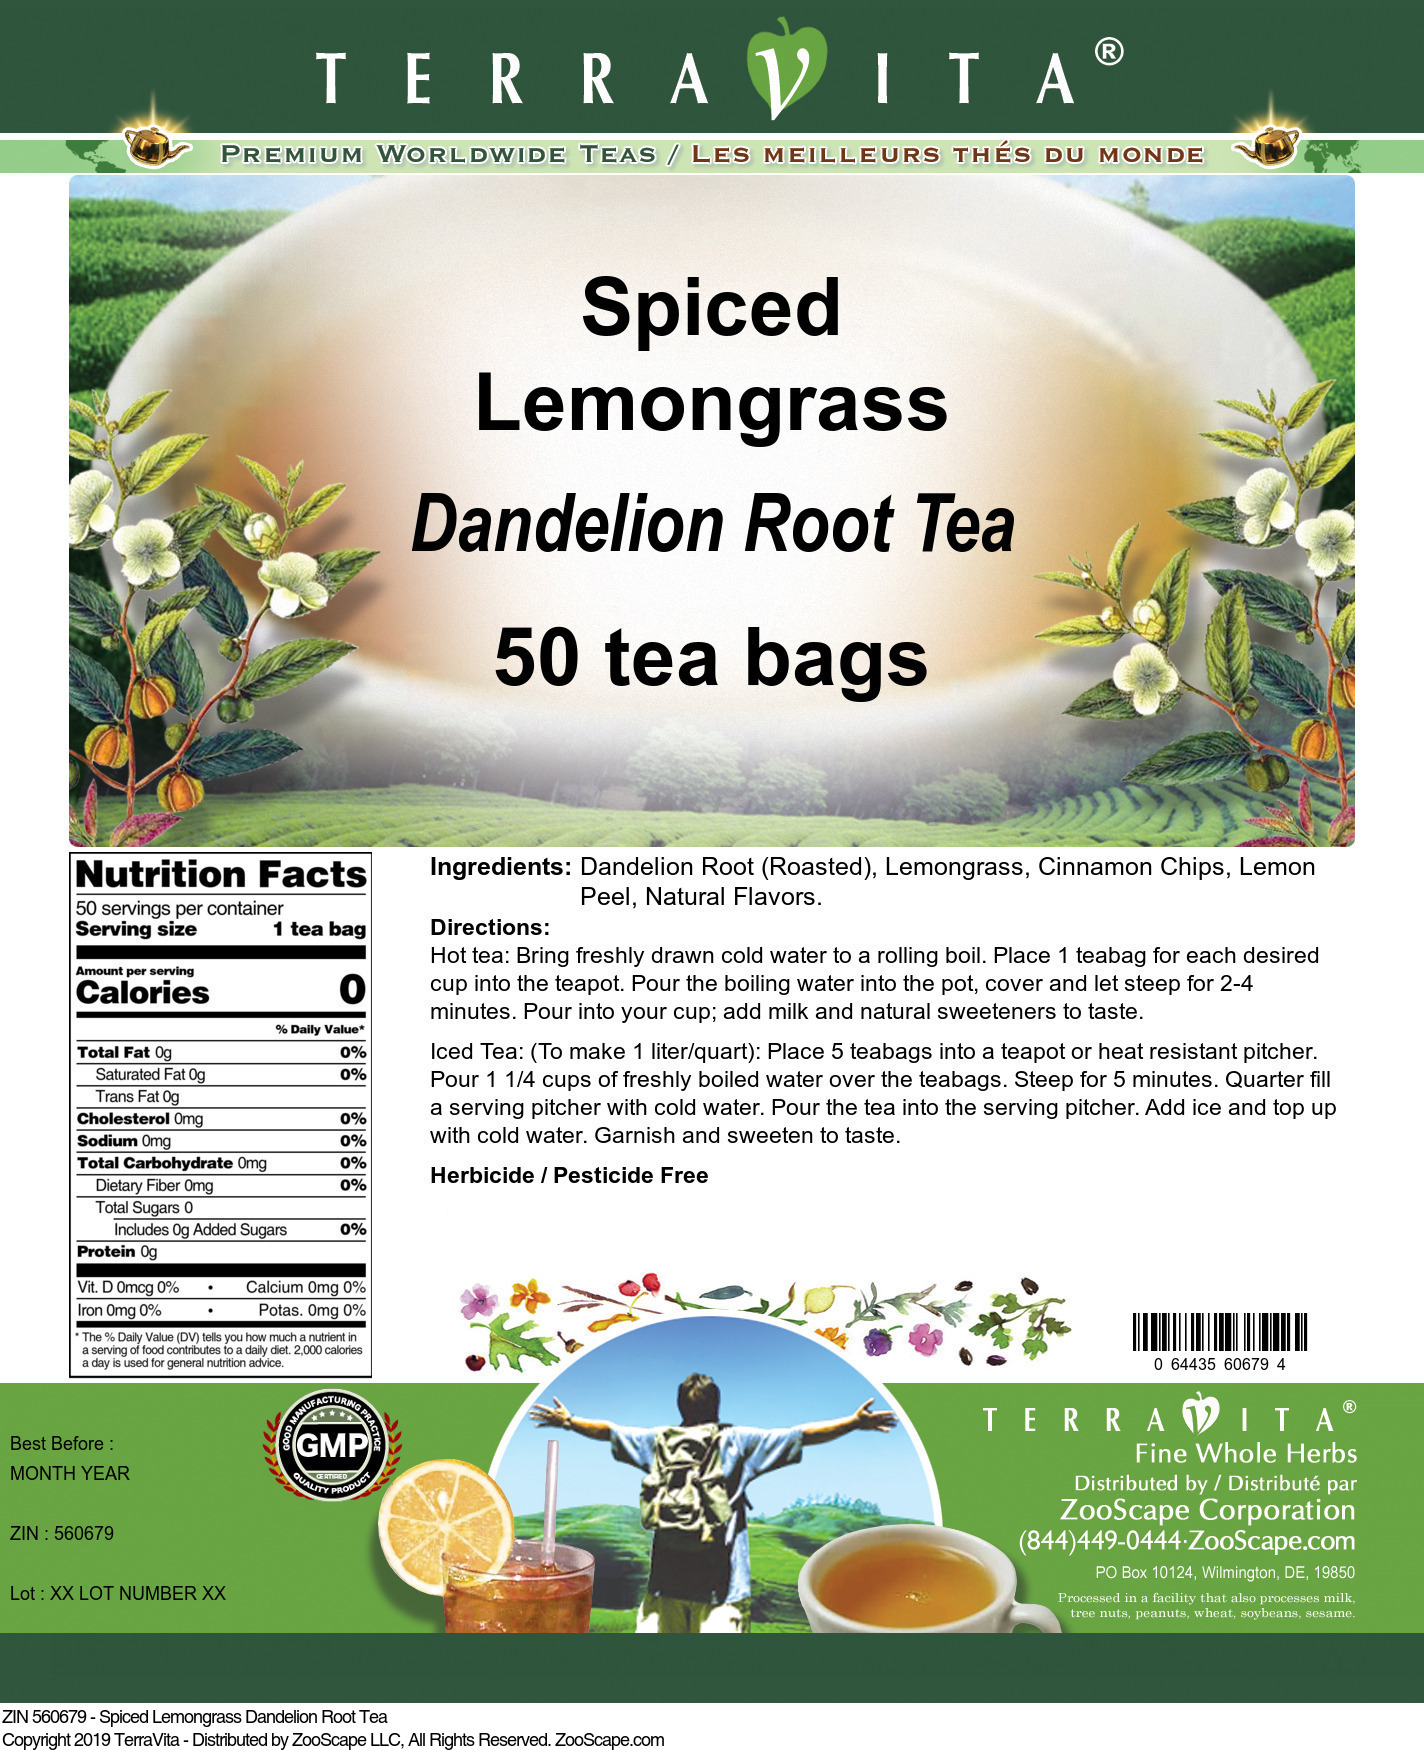 Spiced Lemongrass Dandelion Root Tea - Label